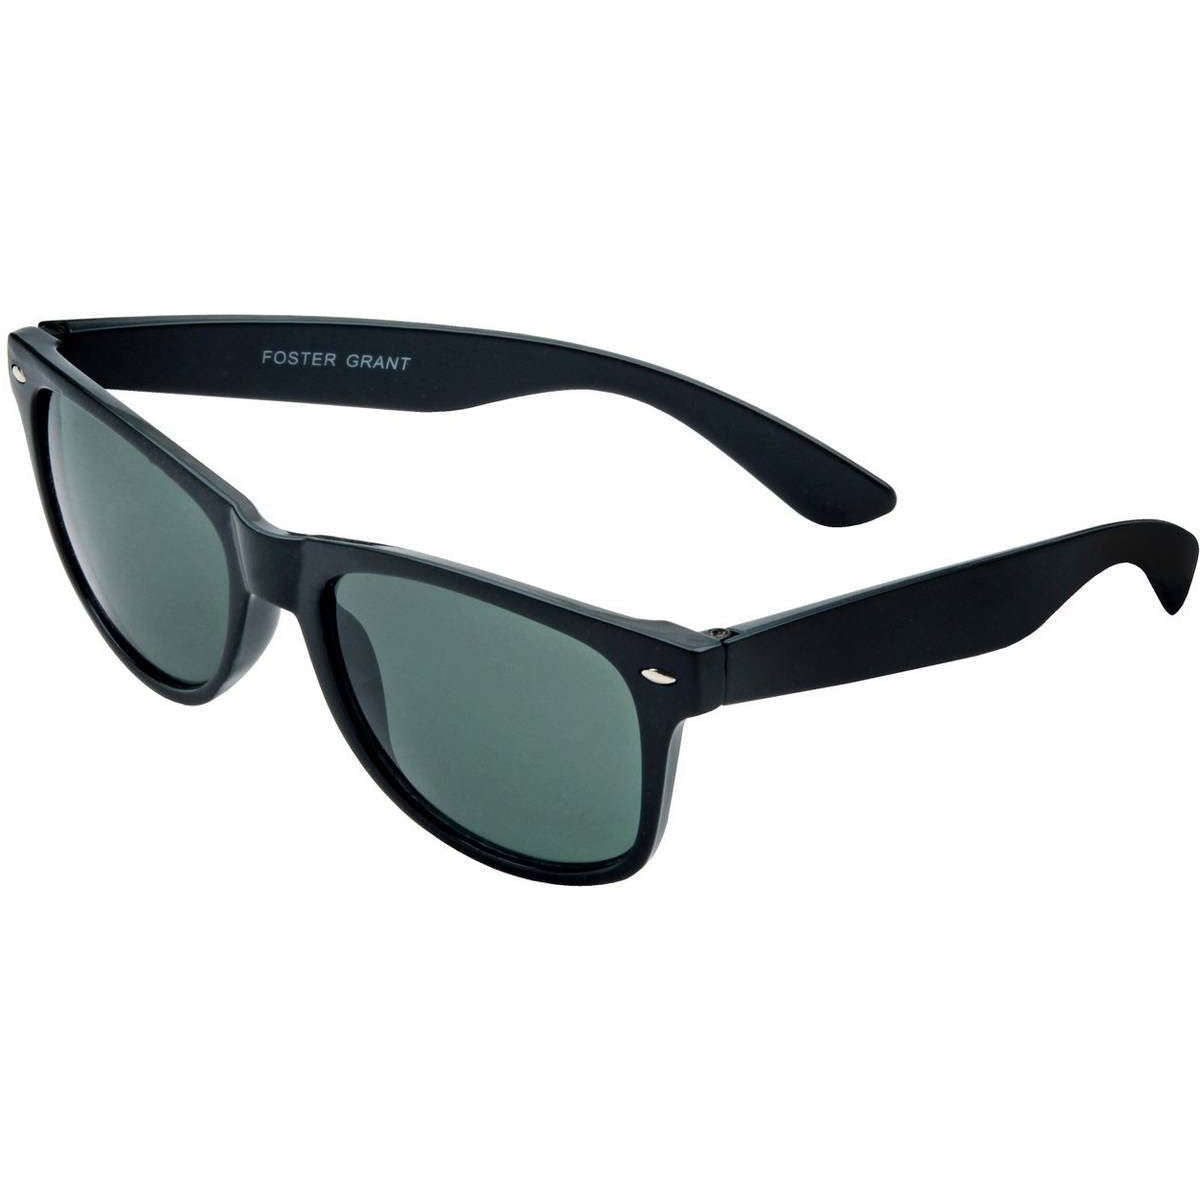 Foster Grant Retro Sunglasses - Black